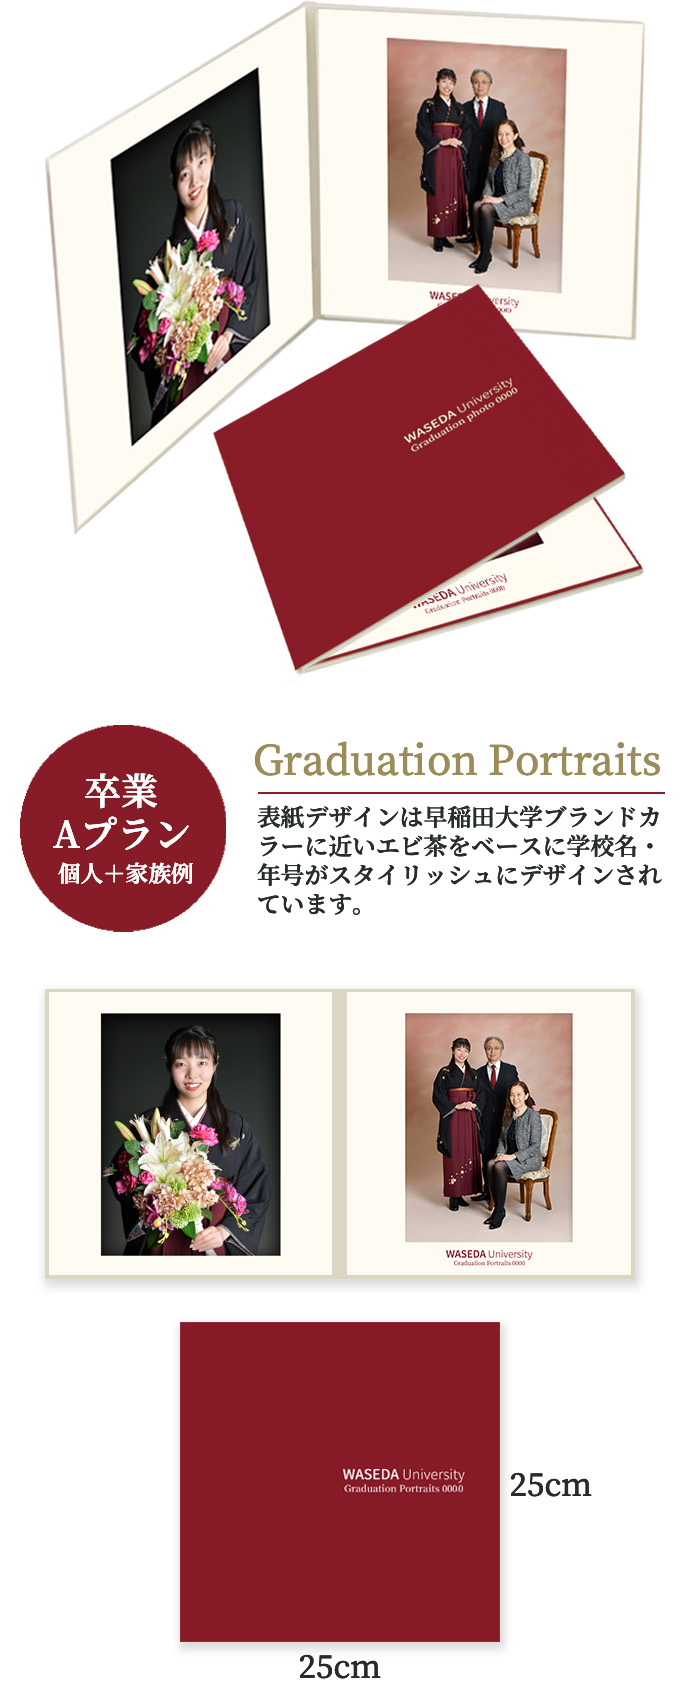 卒業 Aプラン 個人＋家族例 Graduation Portraits 表紙デザインは早稲田大学ブランドカラーに近いエビ茶をベースに学校名・年号がスタイリッシュにデザインされています。